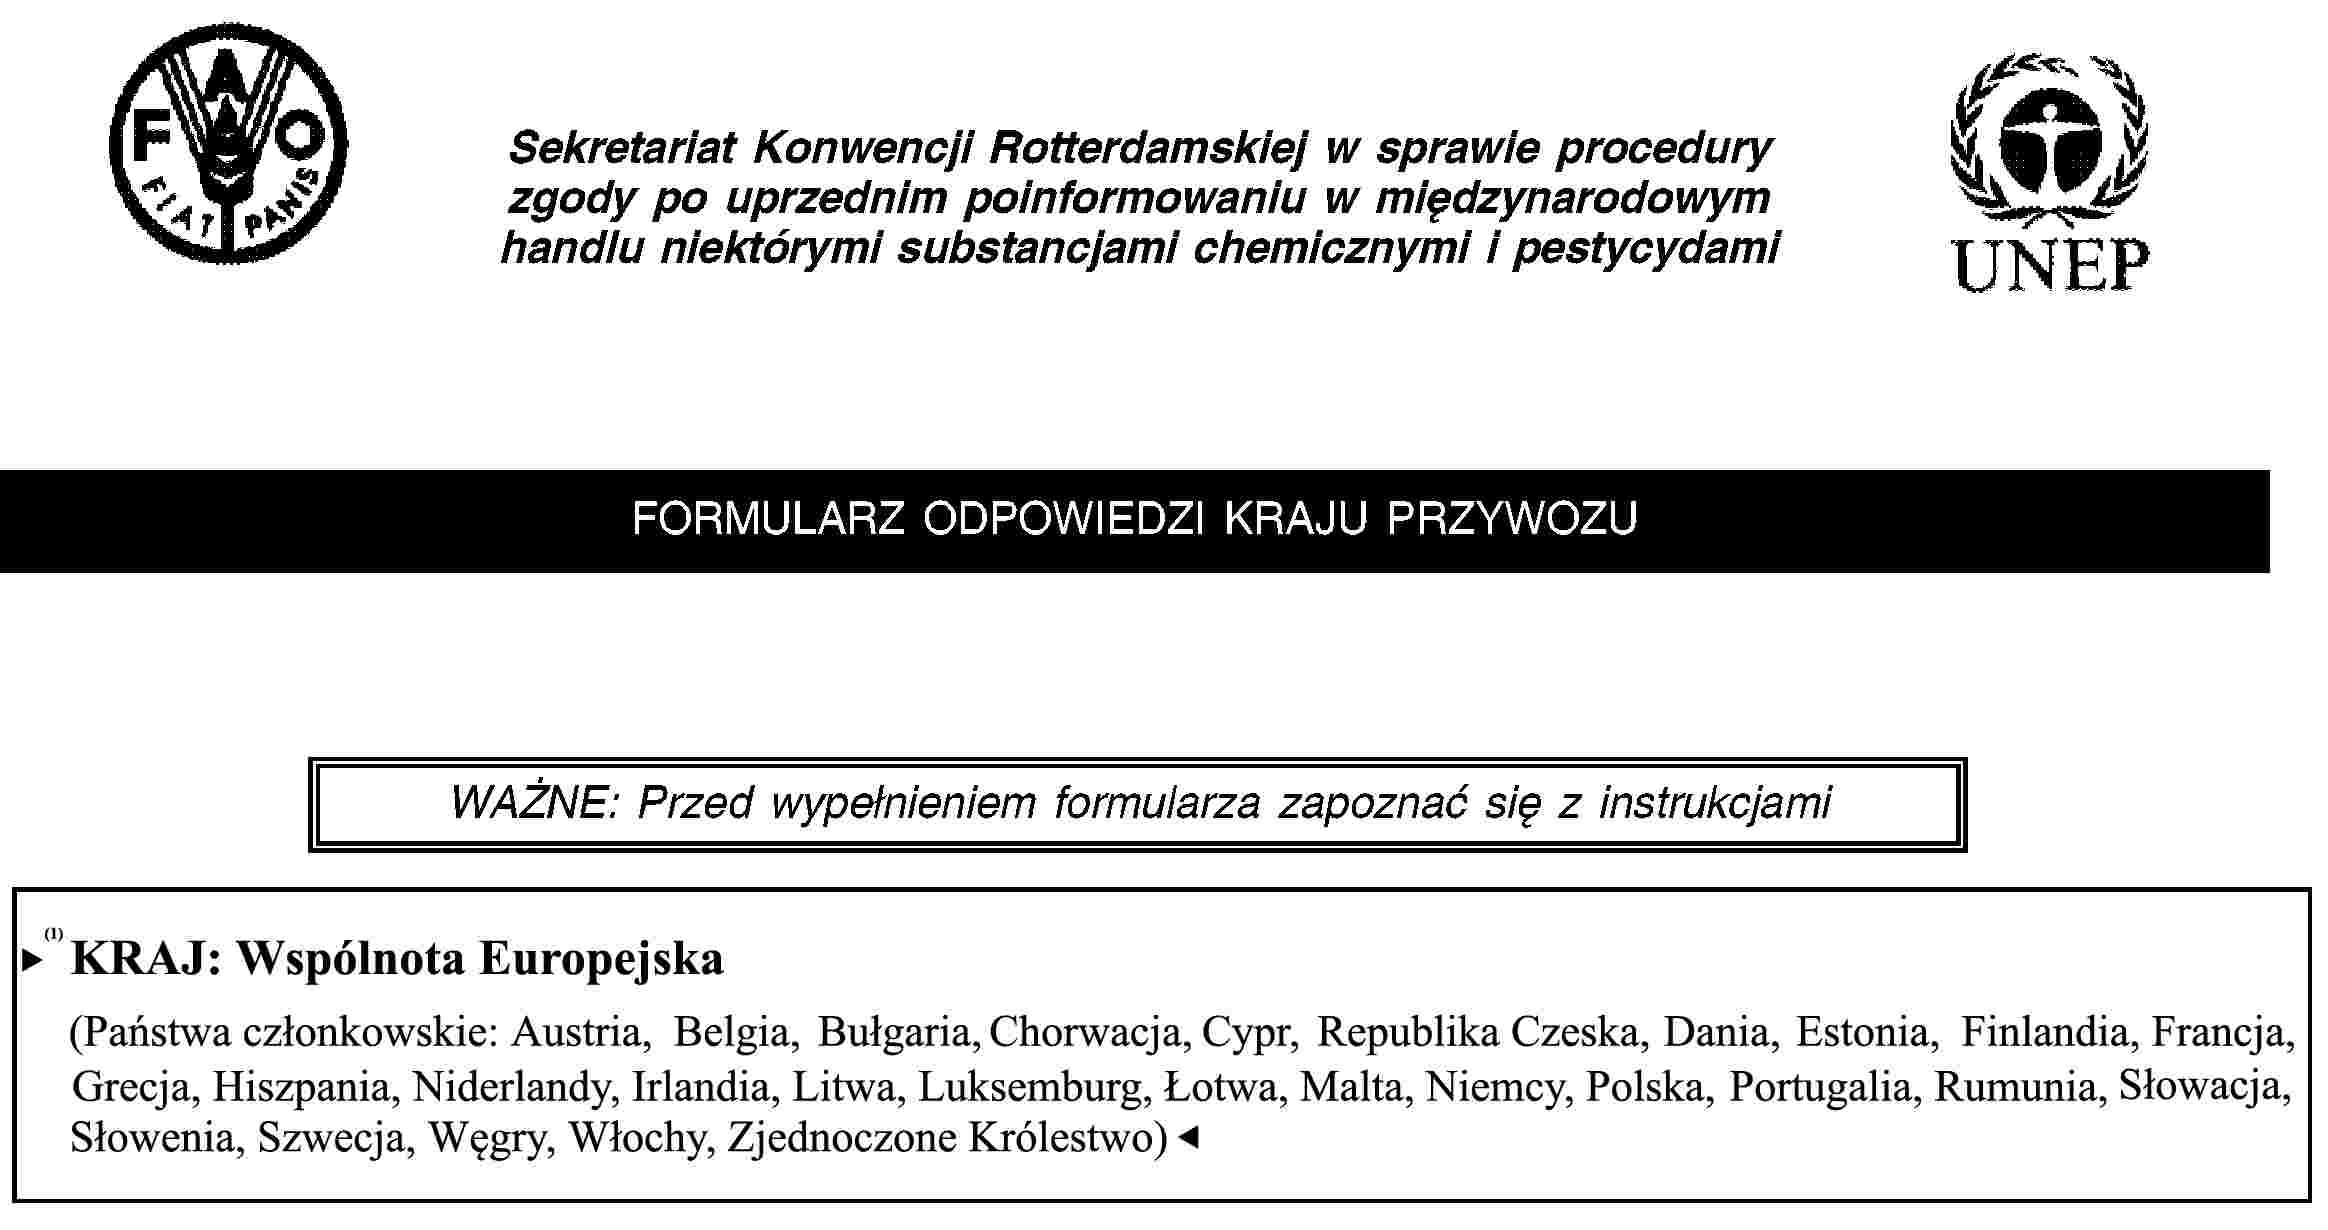 Sekretariat Konwencji Rotterdamskiej w sprawie procedury zgody po uprzednim poinformowaniu w międzynarodowym handlu niektórymi substancjami chemicznymi i pestycydamiFORMULARZ ODPOWIEDZI KRAJU PRZYWOZUWAŻNE: Przed wypełnieniem formularza zapoznać się z instrukcjamiKRAJ: Wspólnota Europejska(Państwa Członkowskie: Austria, Belgia, Cypr, Dania, Estonia, Finlandia, Francja, Grecja, Hiszpania, Irlandia, Litwa, Luksemburg, Łotwa, Malta, Niderlandy, Niemcy, Polska, Portugalia, Republika Czeska, Słowacja, Słowenia, Szwecja, Węgry, Włochy, Zjednoczone Królestwo)